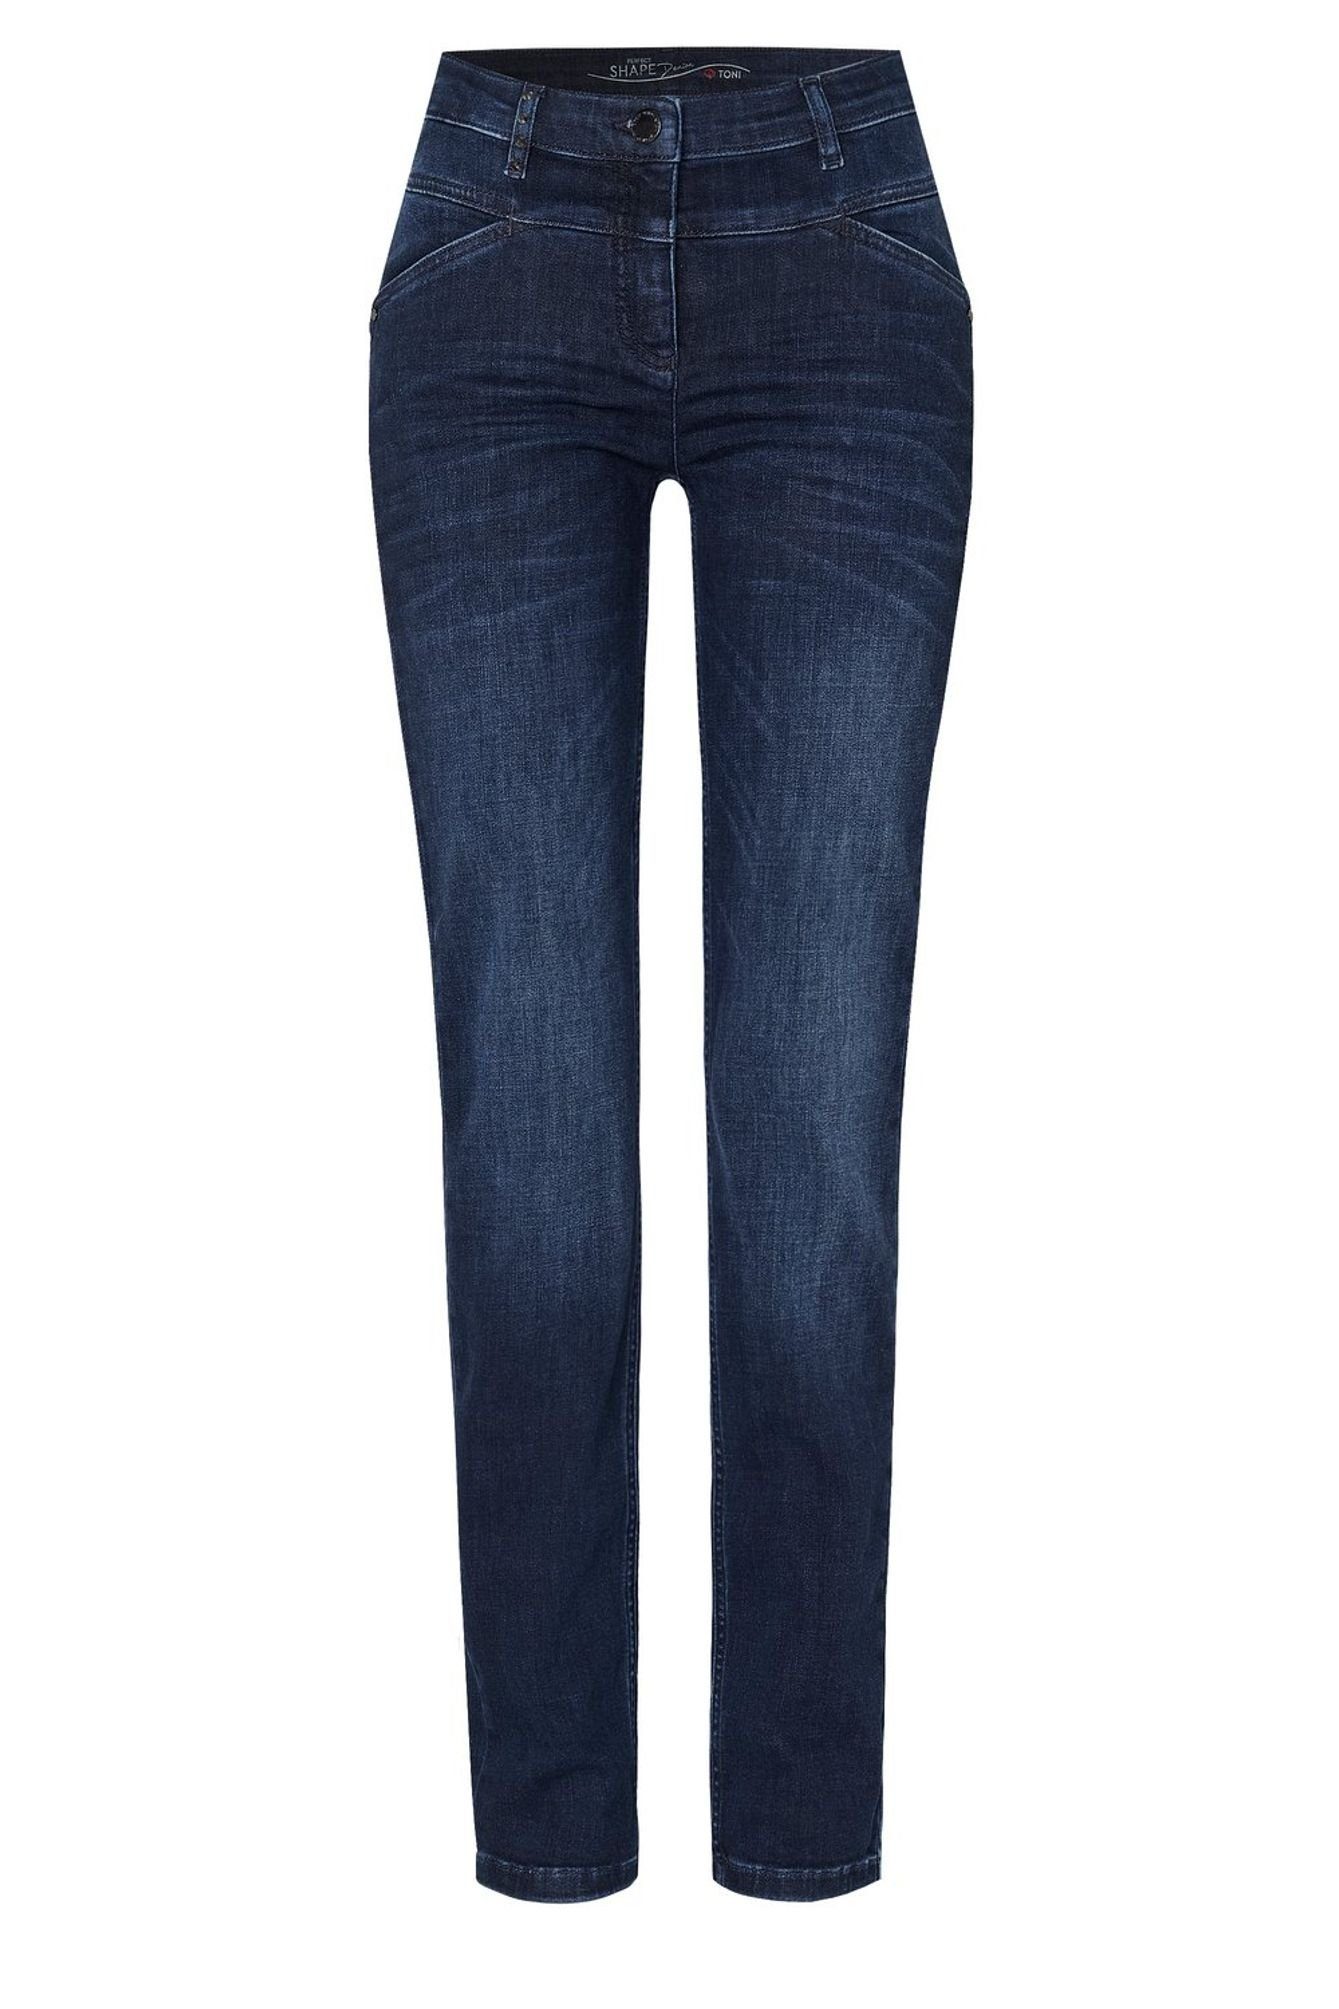 TONI 5-Pocket-Jeans 11-01 1106-17 5-Pocket-Design blue used (574)